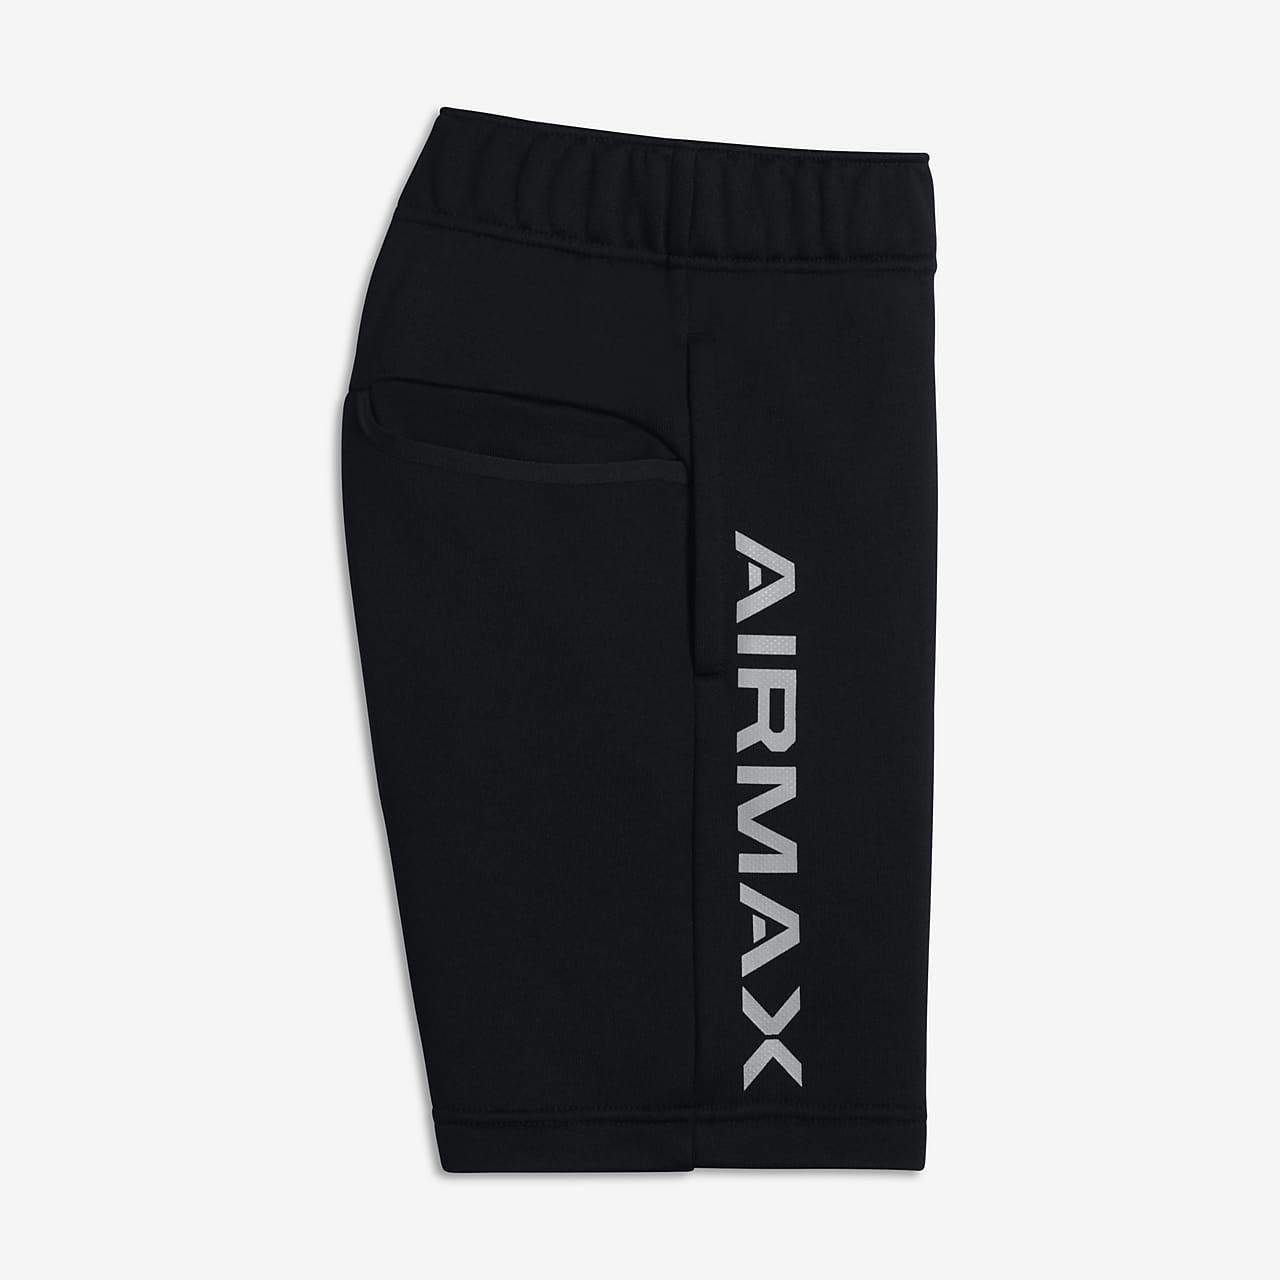 nike air max shorts